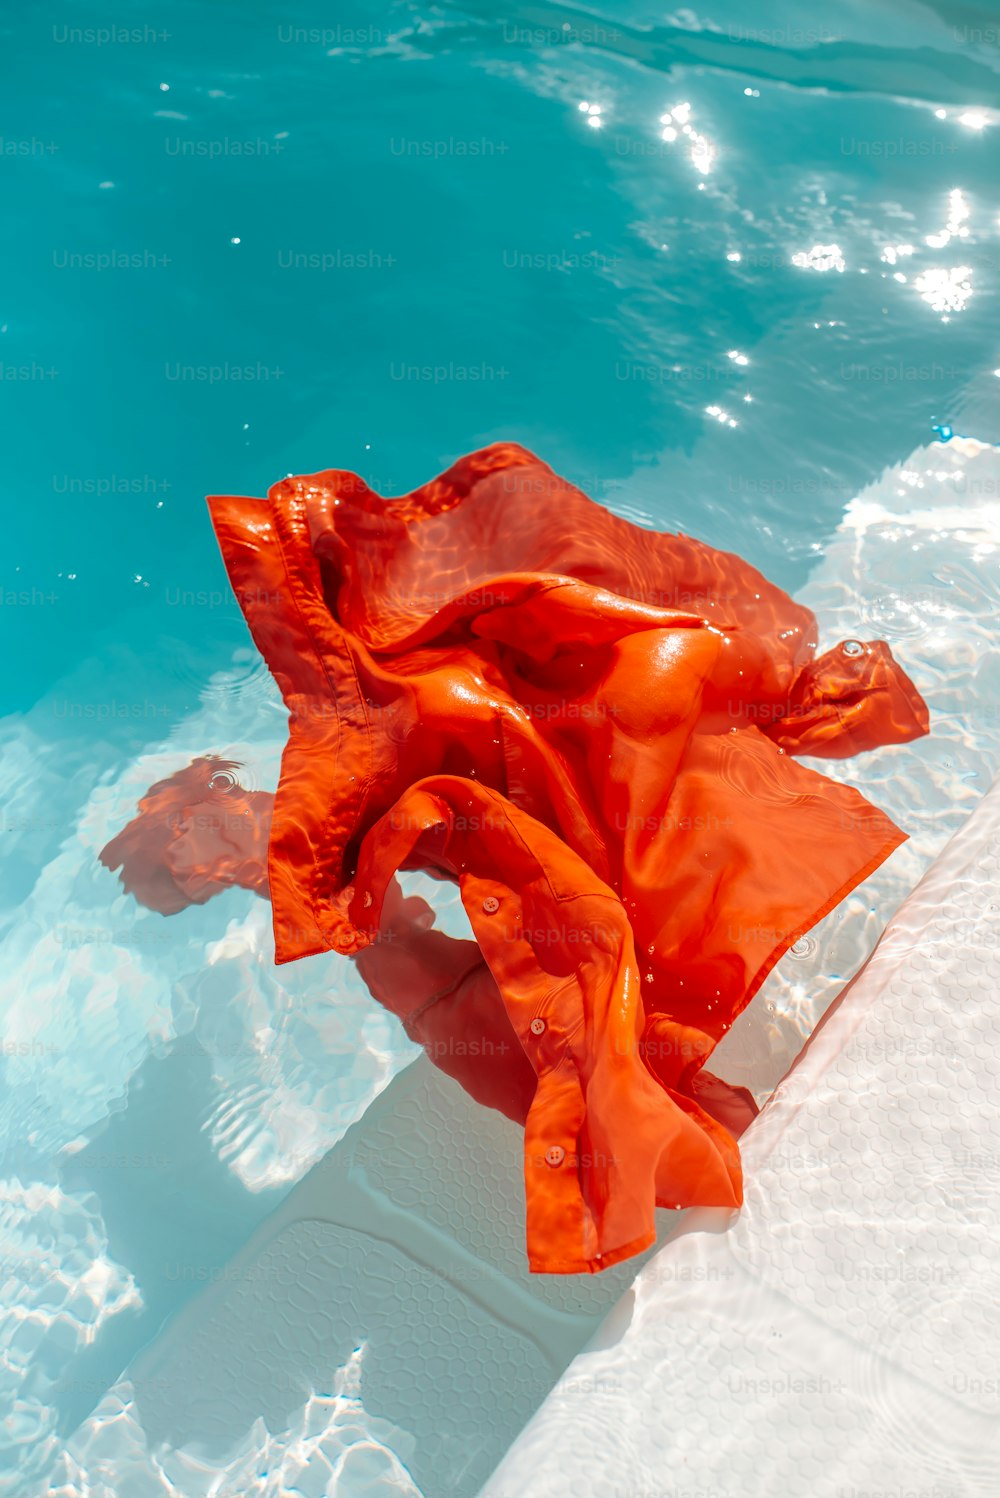 un tissu orange flottant dans un bassin d’eau